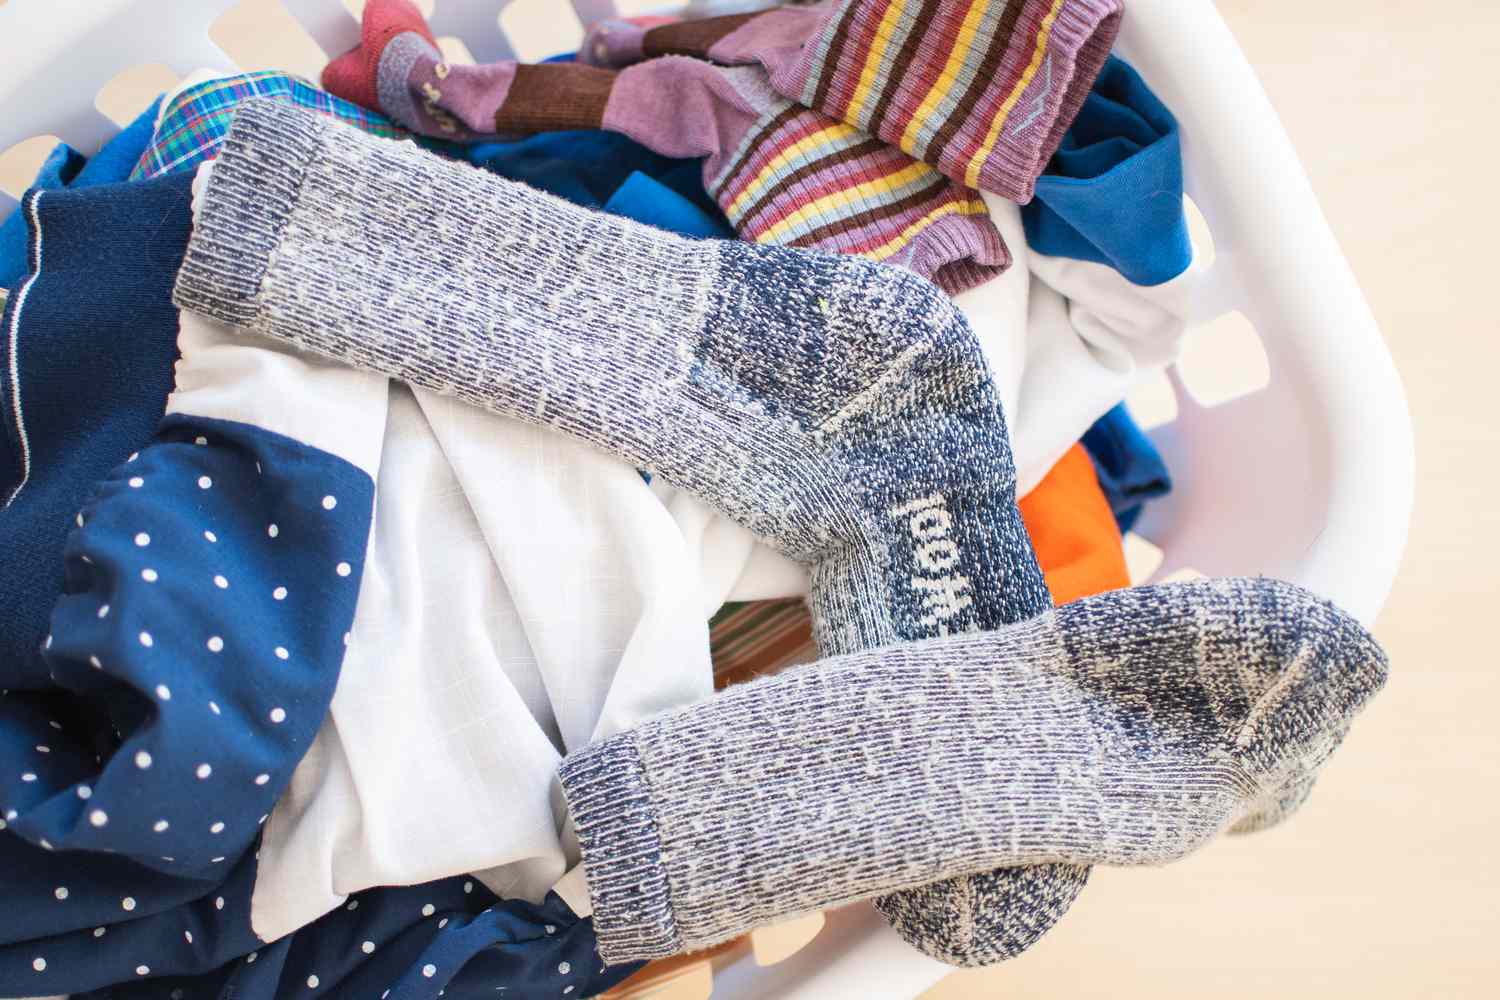 Superwash Wollsocken in einem Wäschekorb voller Kleidung